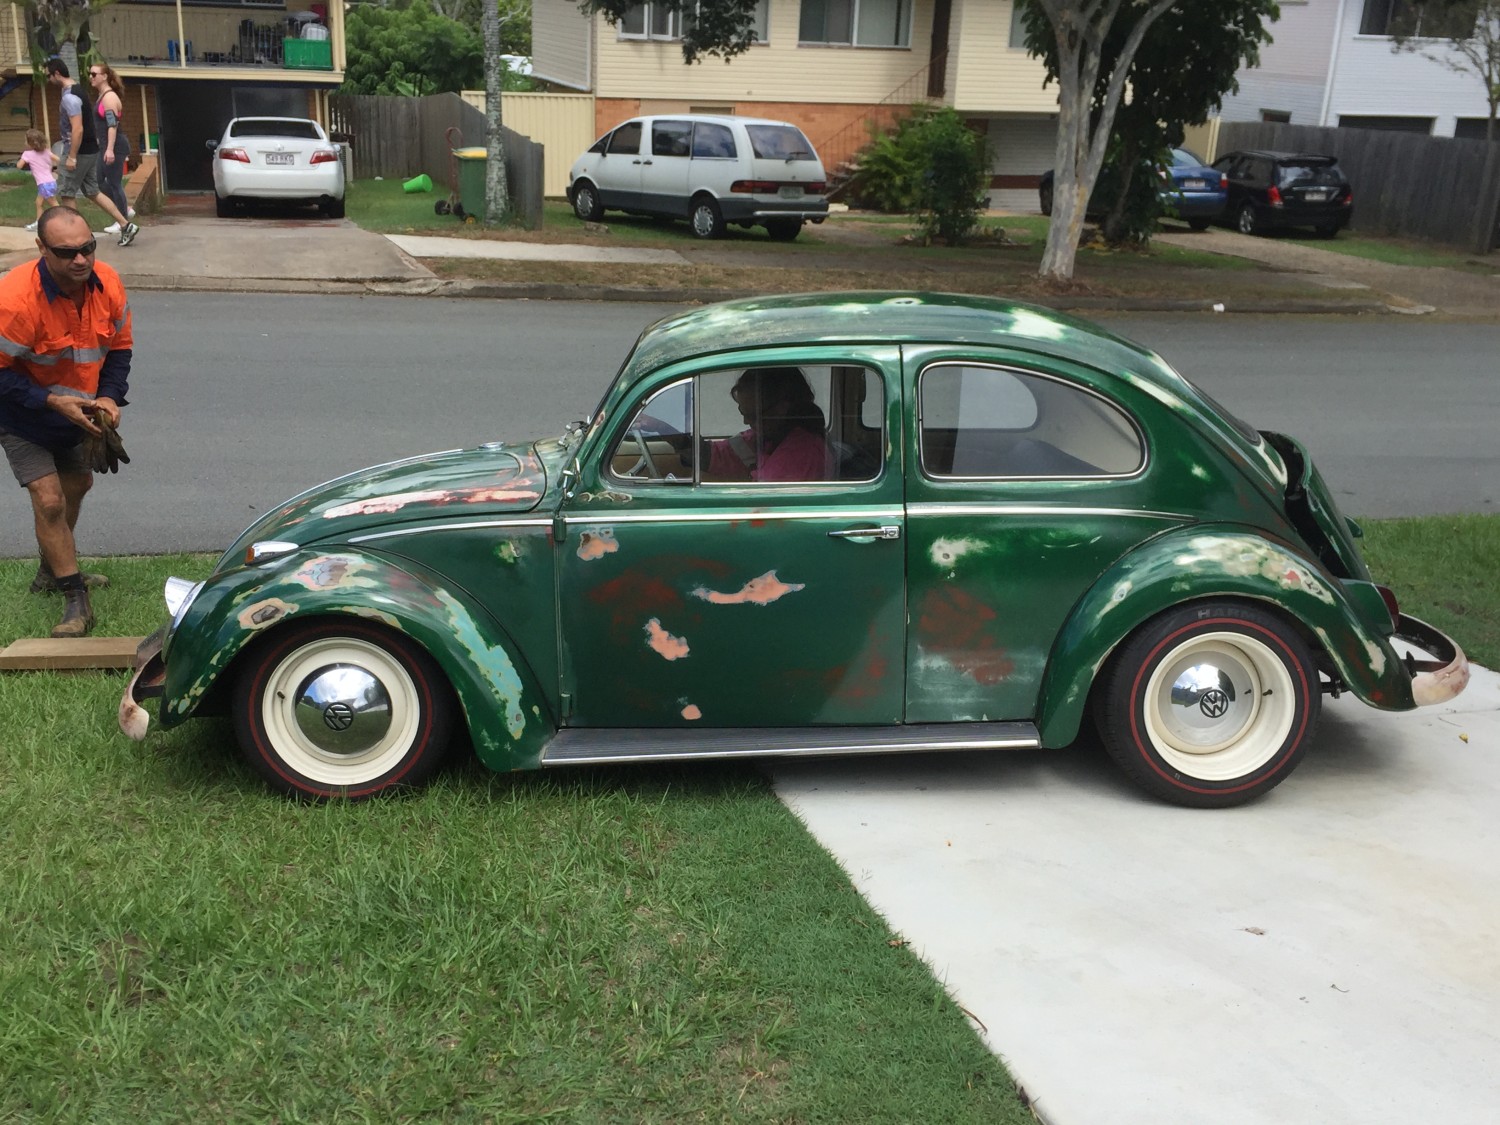 1966 Volkswagen Beetle type 1